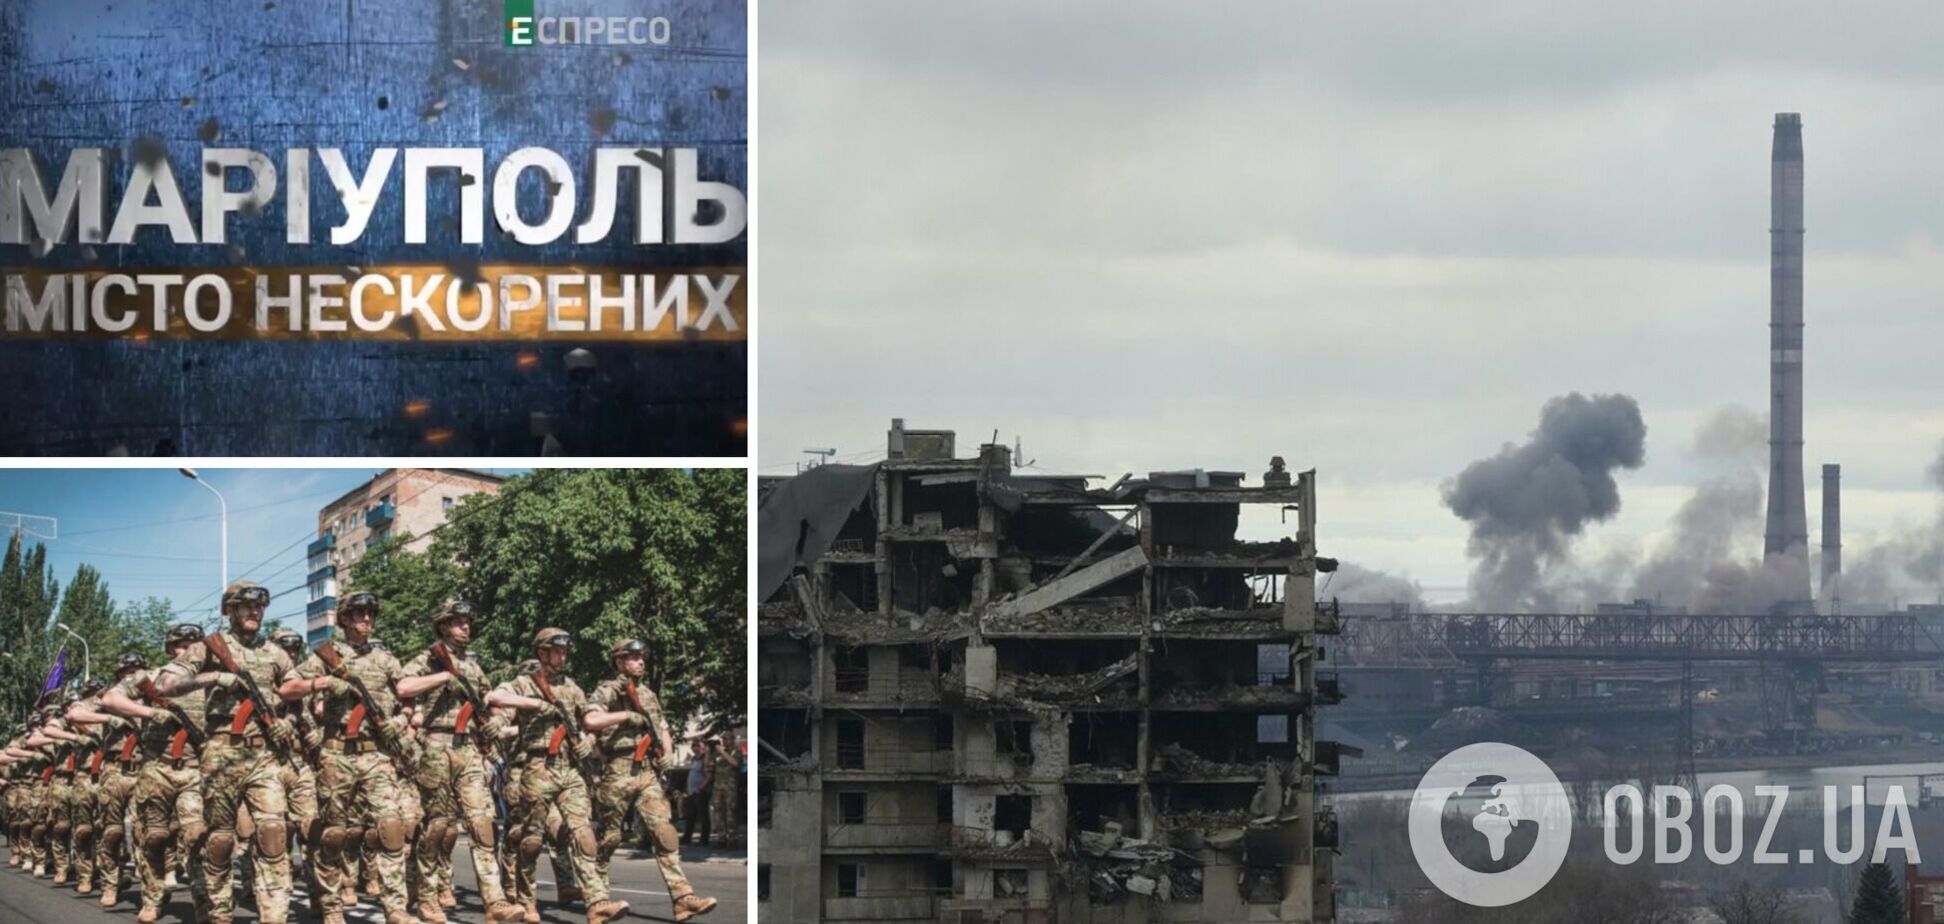 'Маріуполь. Місто нескорених': в Україні покажуть документальний фільм про битву за місто